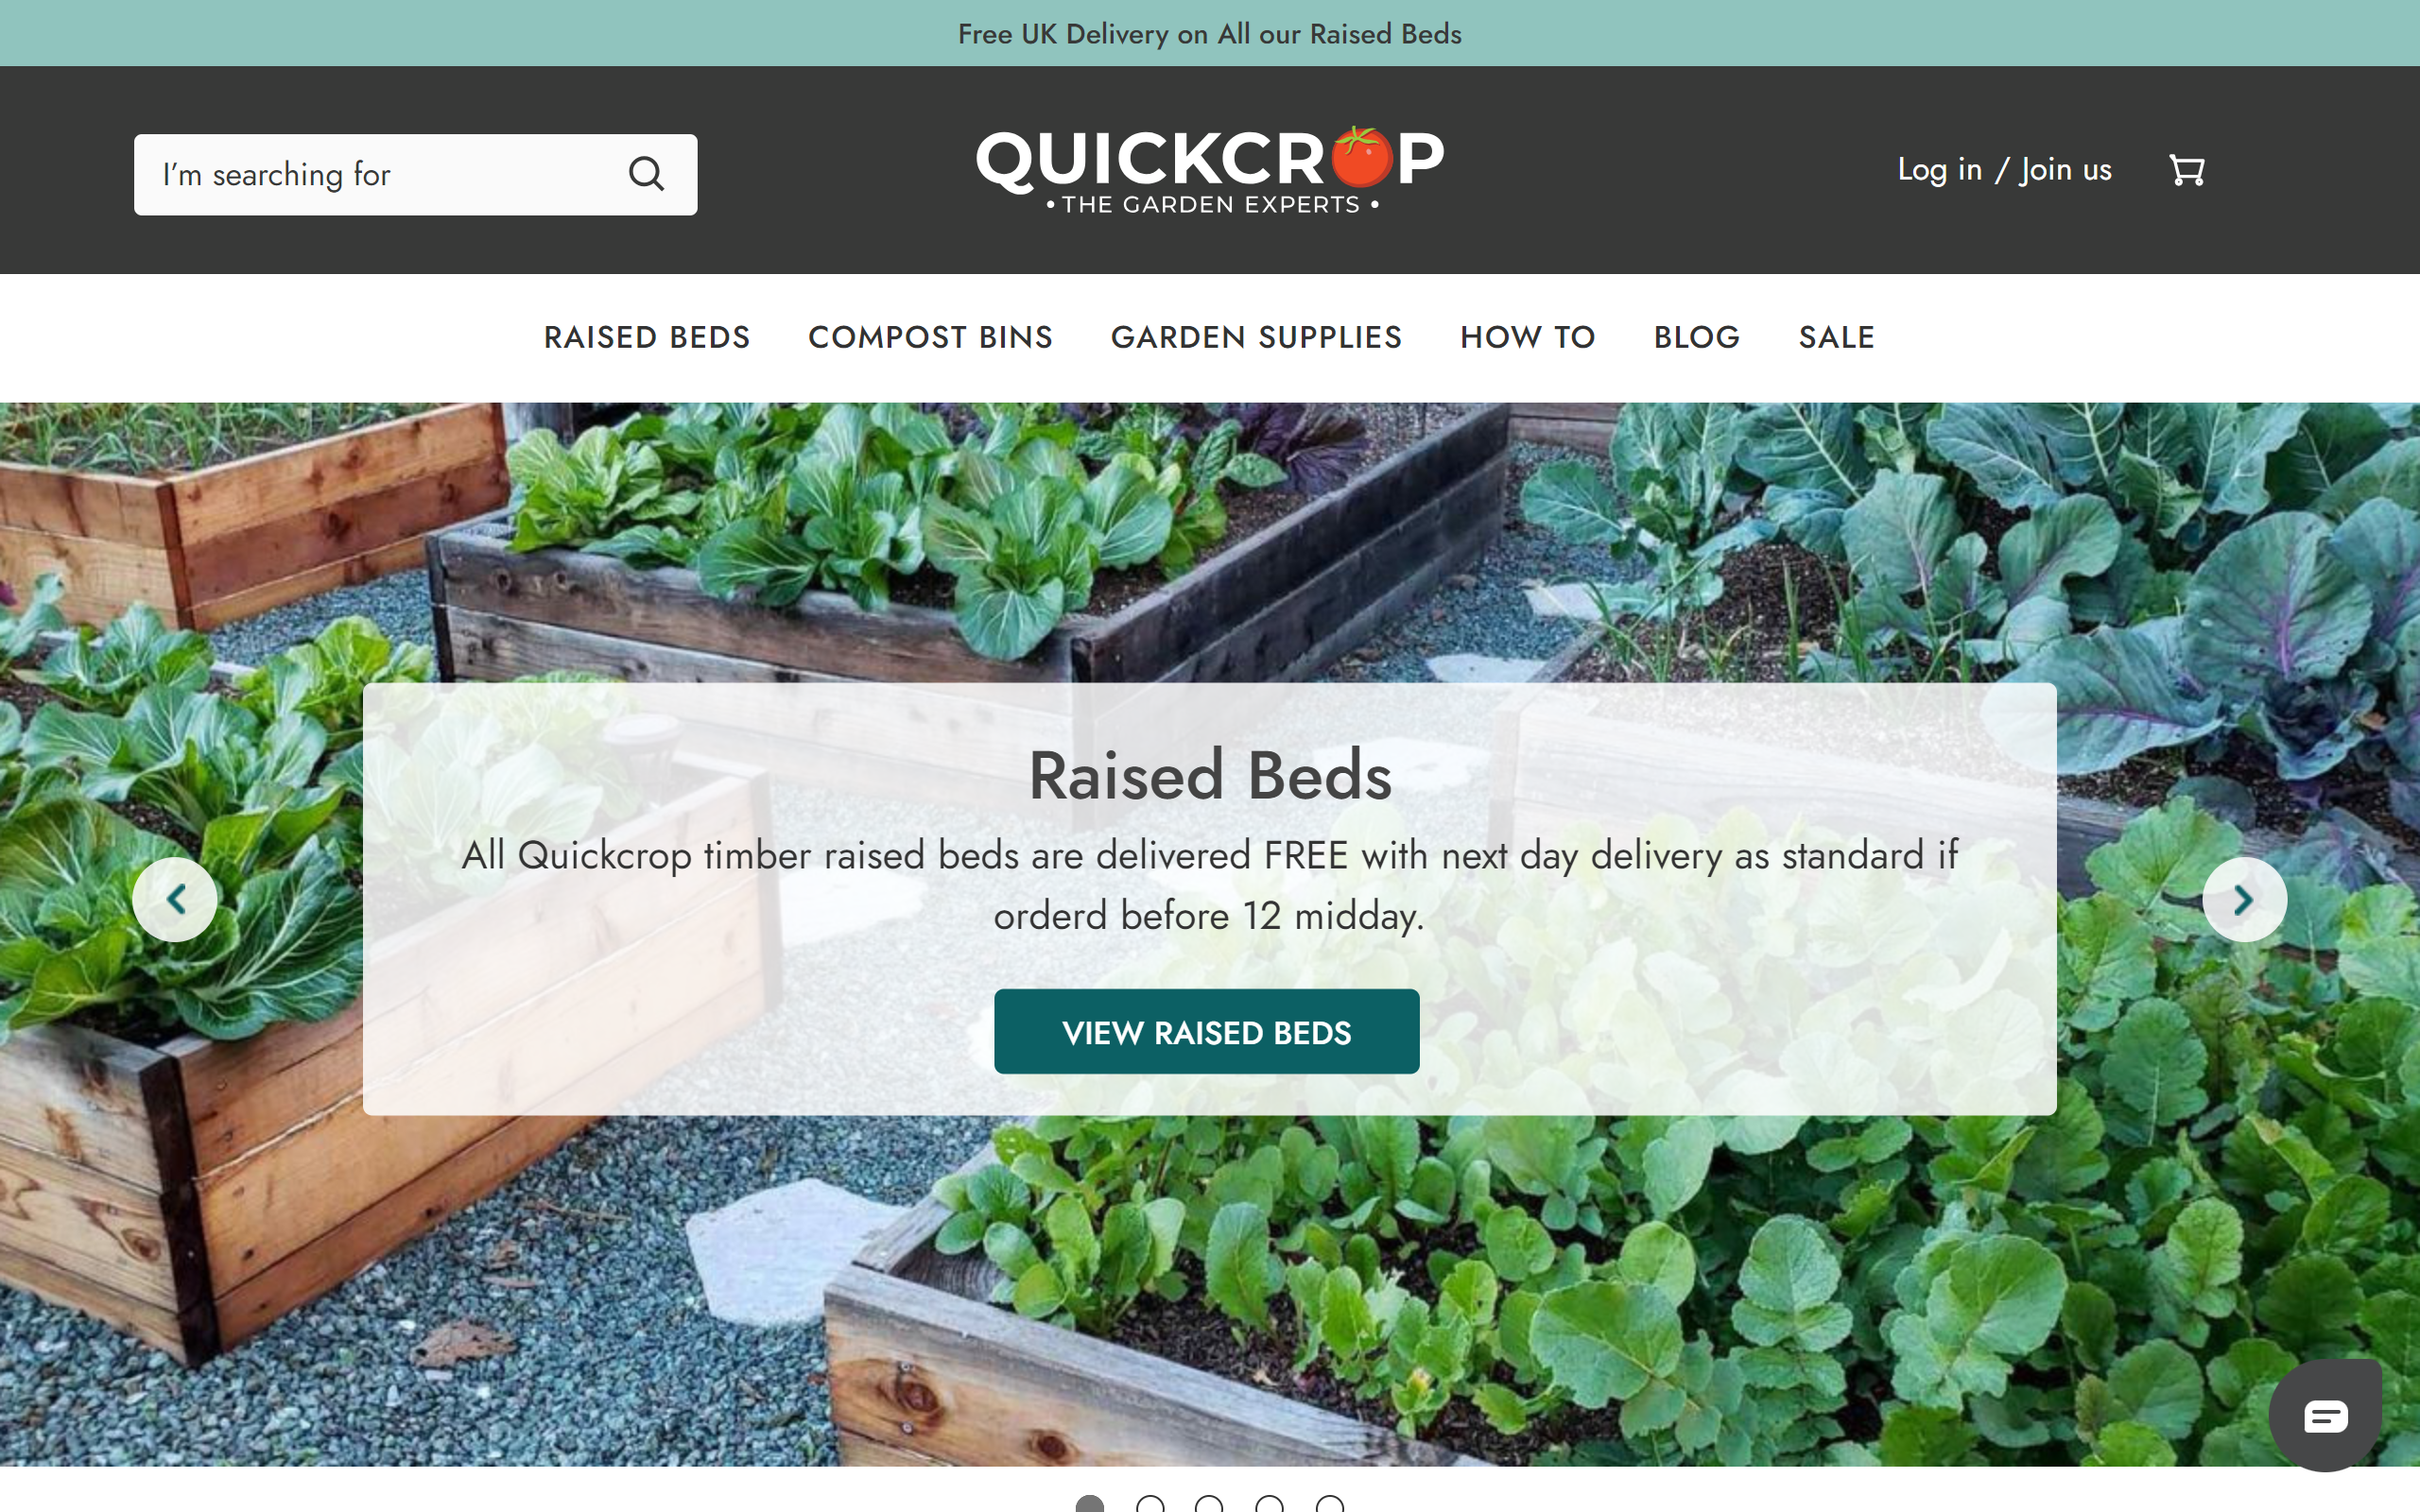 Free gardening blogs